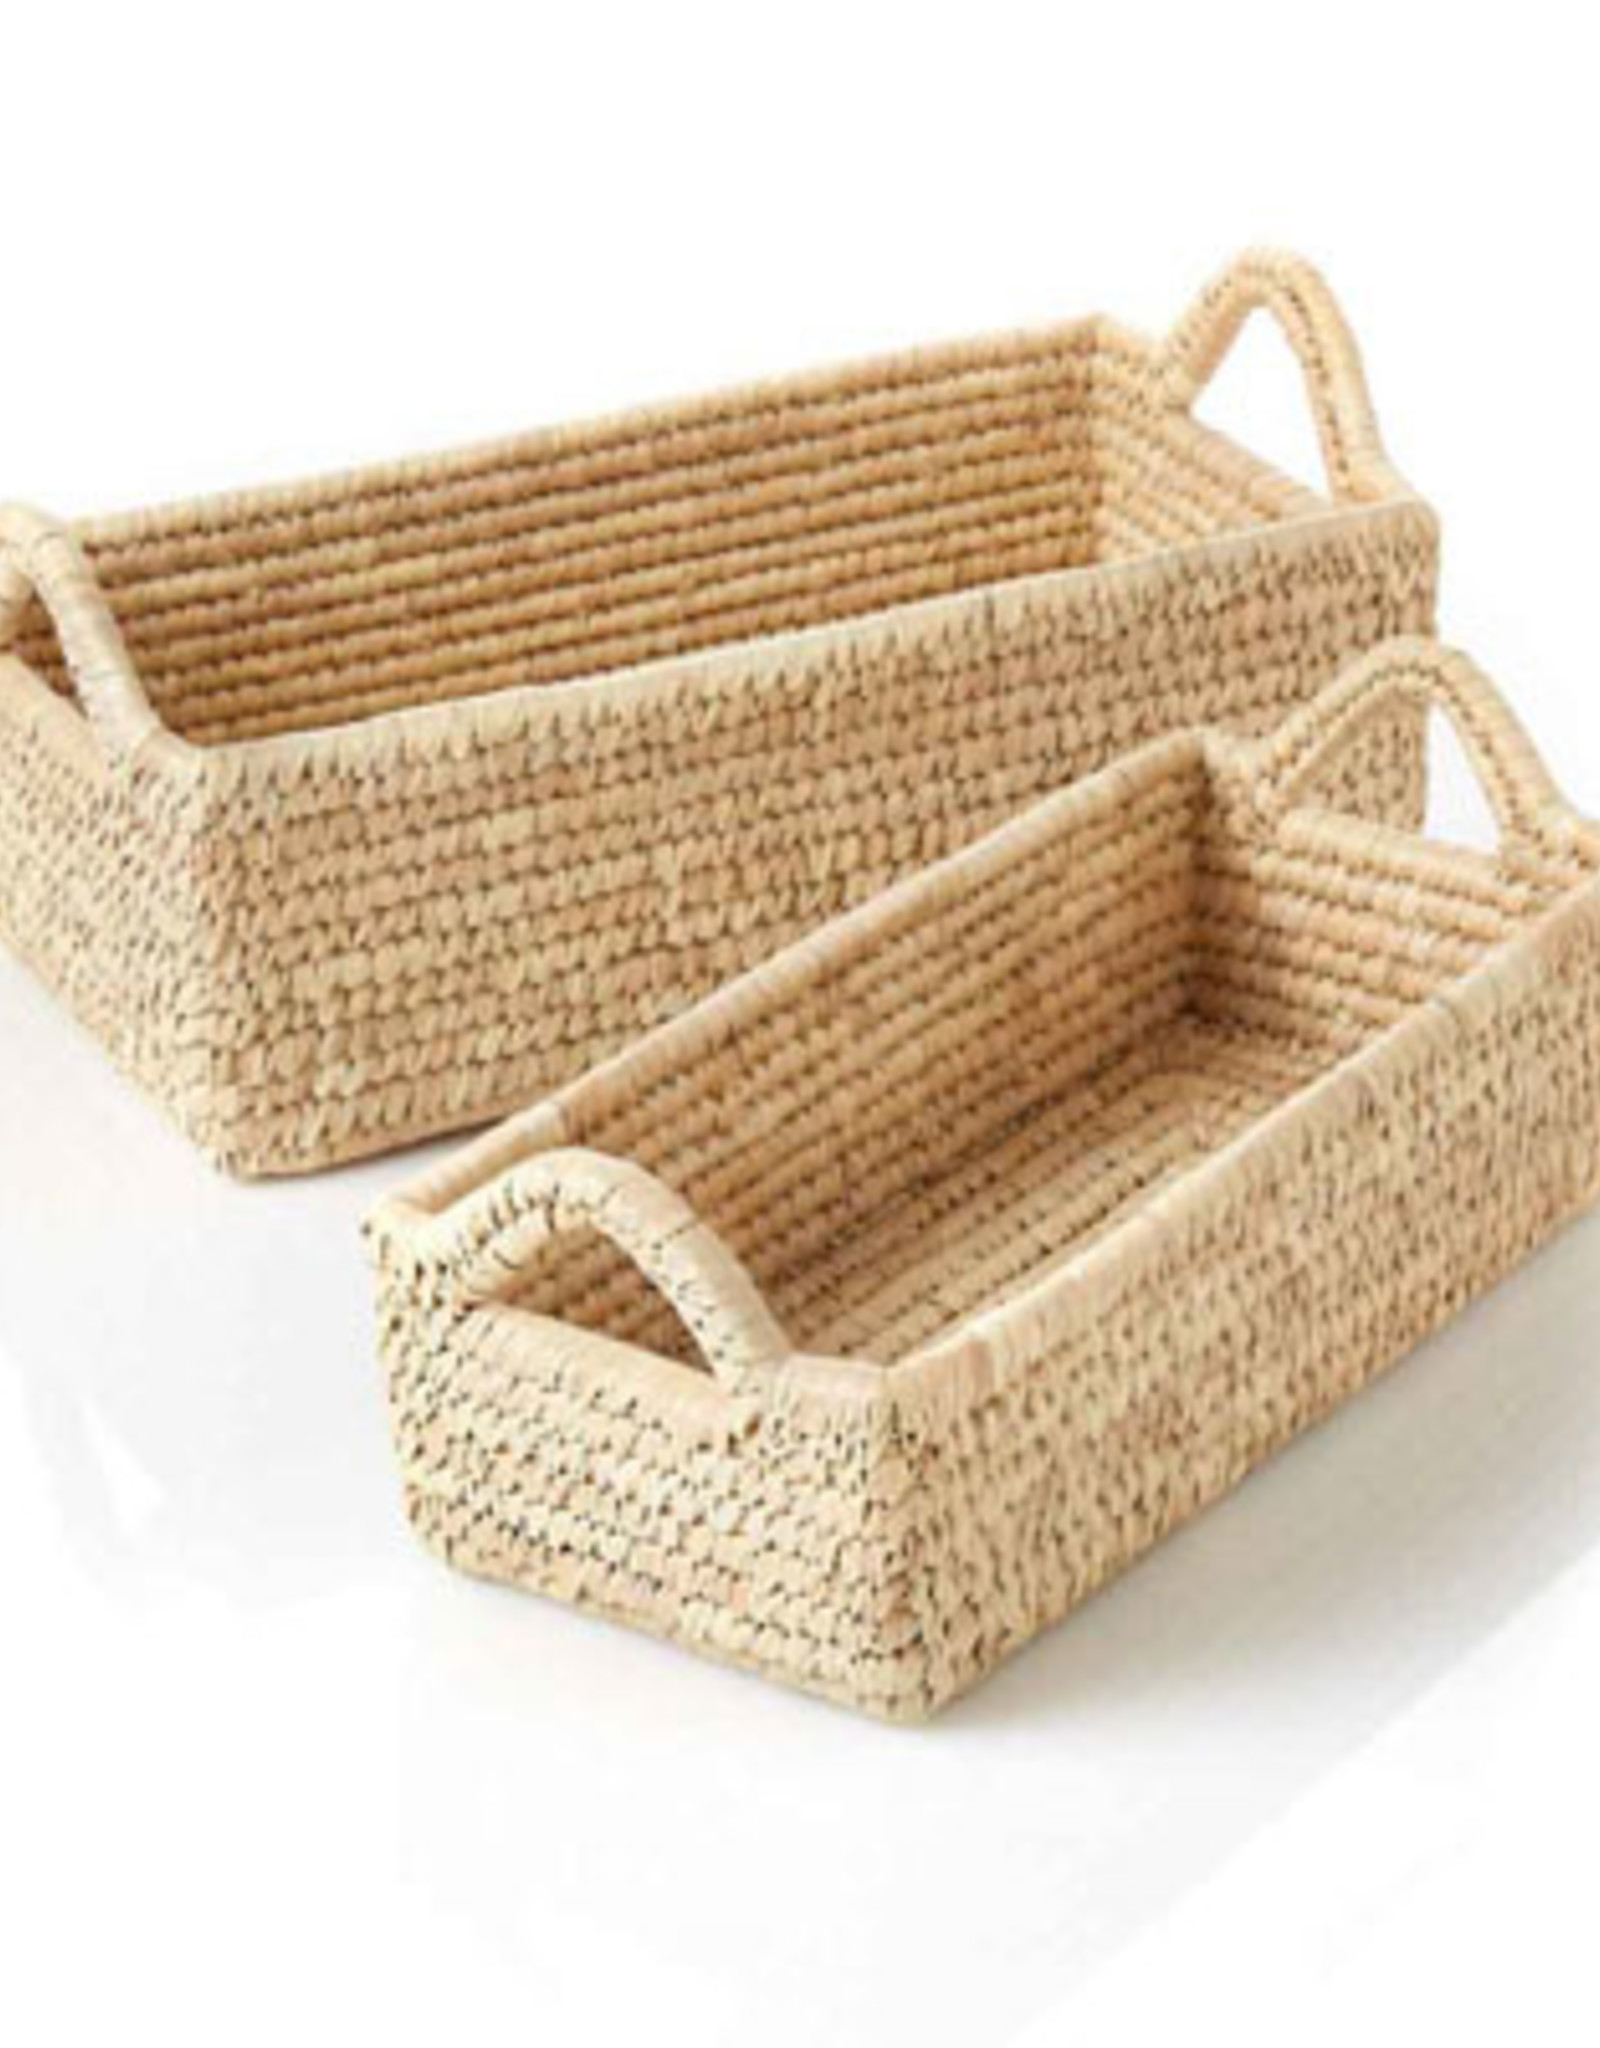 Serrv Long Kaisa Grass Basket - Large